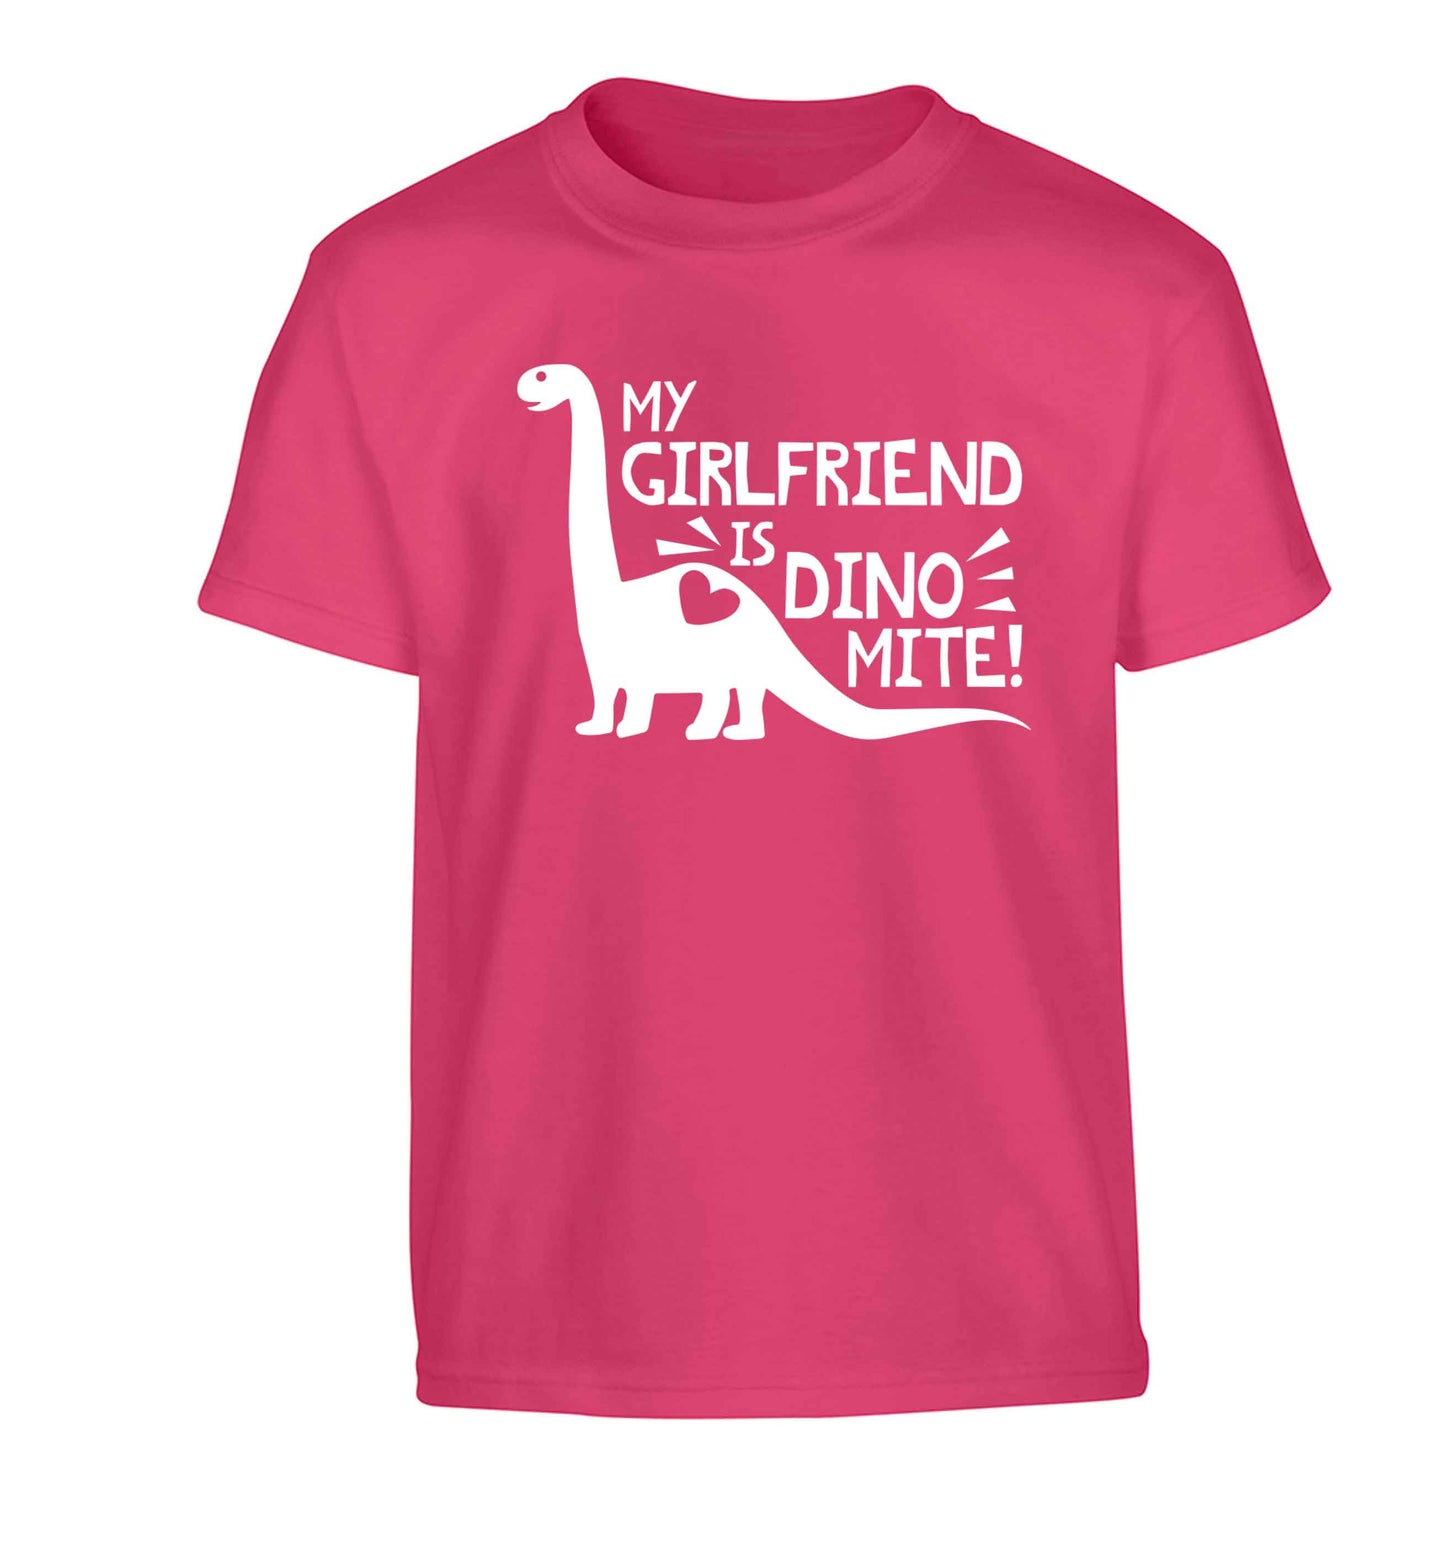 My girlfriend is dinomite! Children's pink Tshirt 12-13 Years